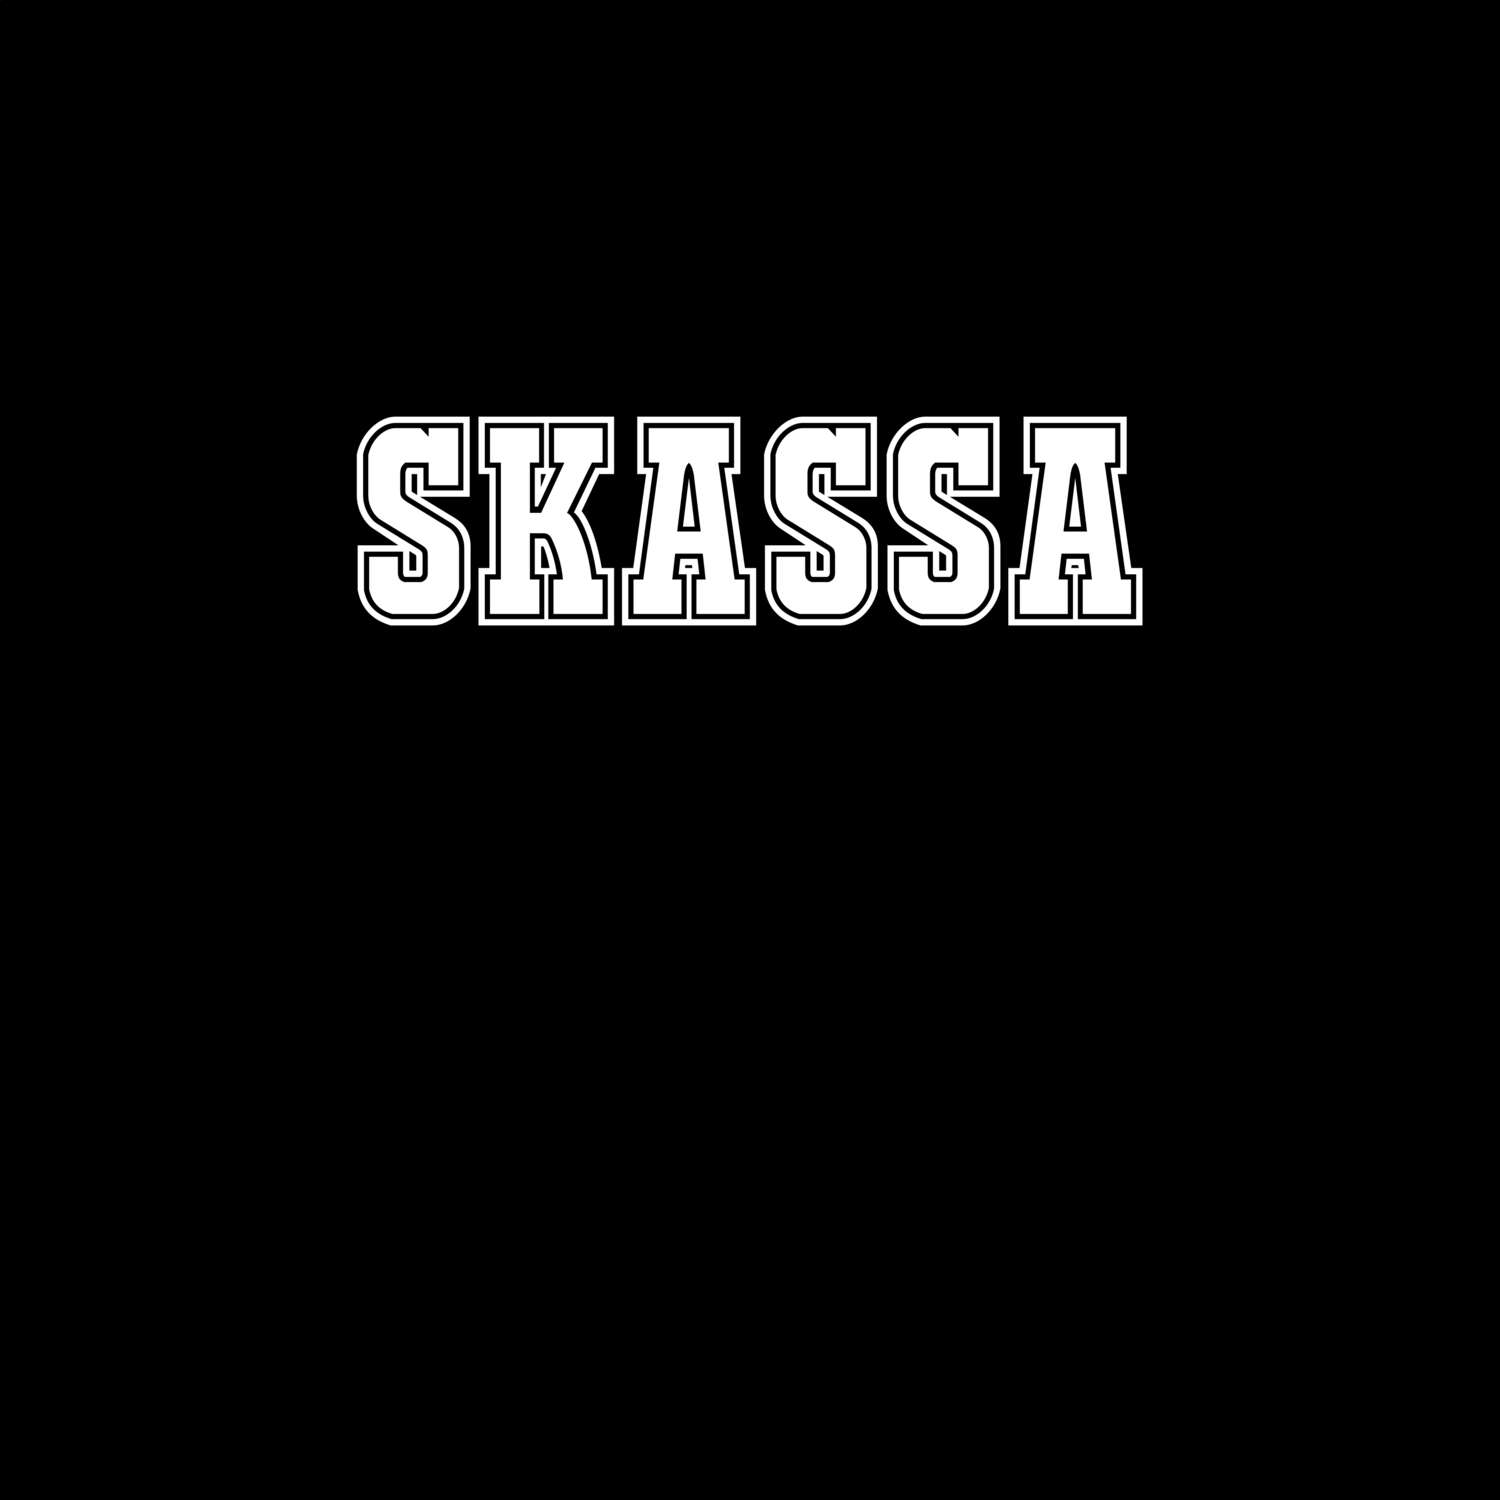 Skassa T-Shirt »Classic«